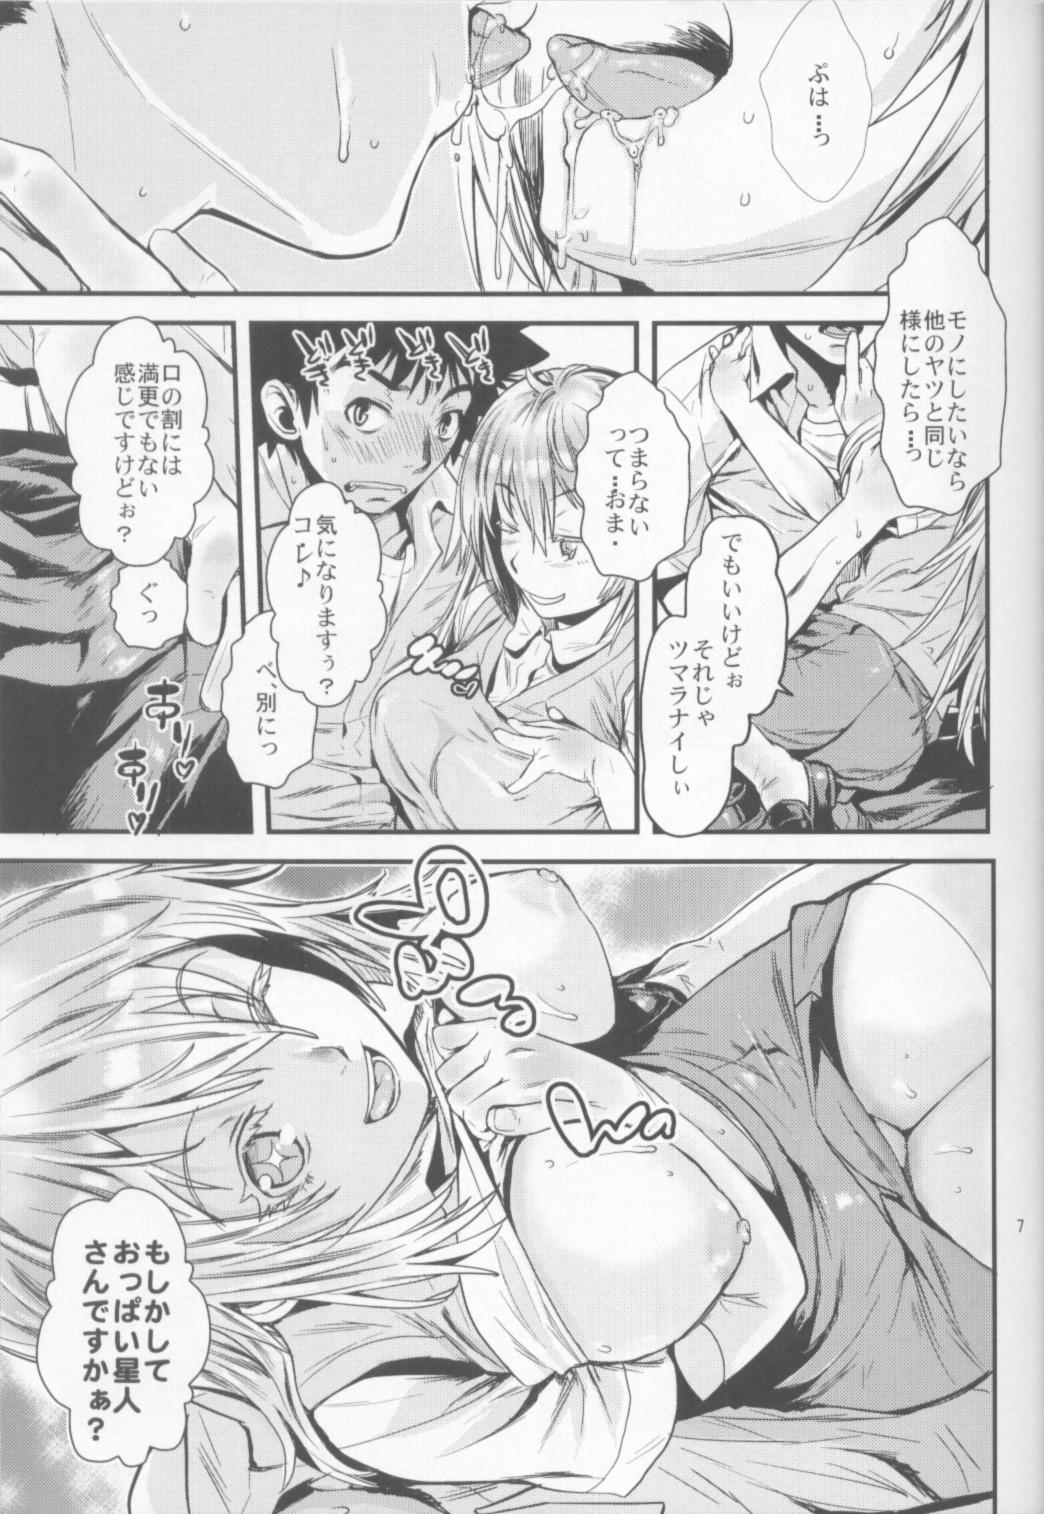 Old Man Manatsu no Reversible - Toaru kagaku no railgun Toaru majutsu no index Sexcams - Page 6